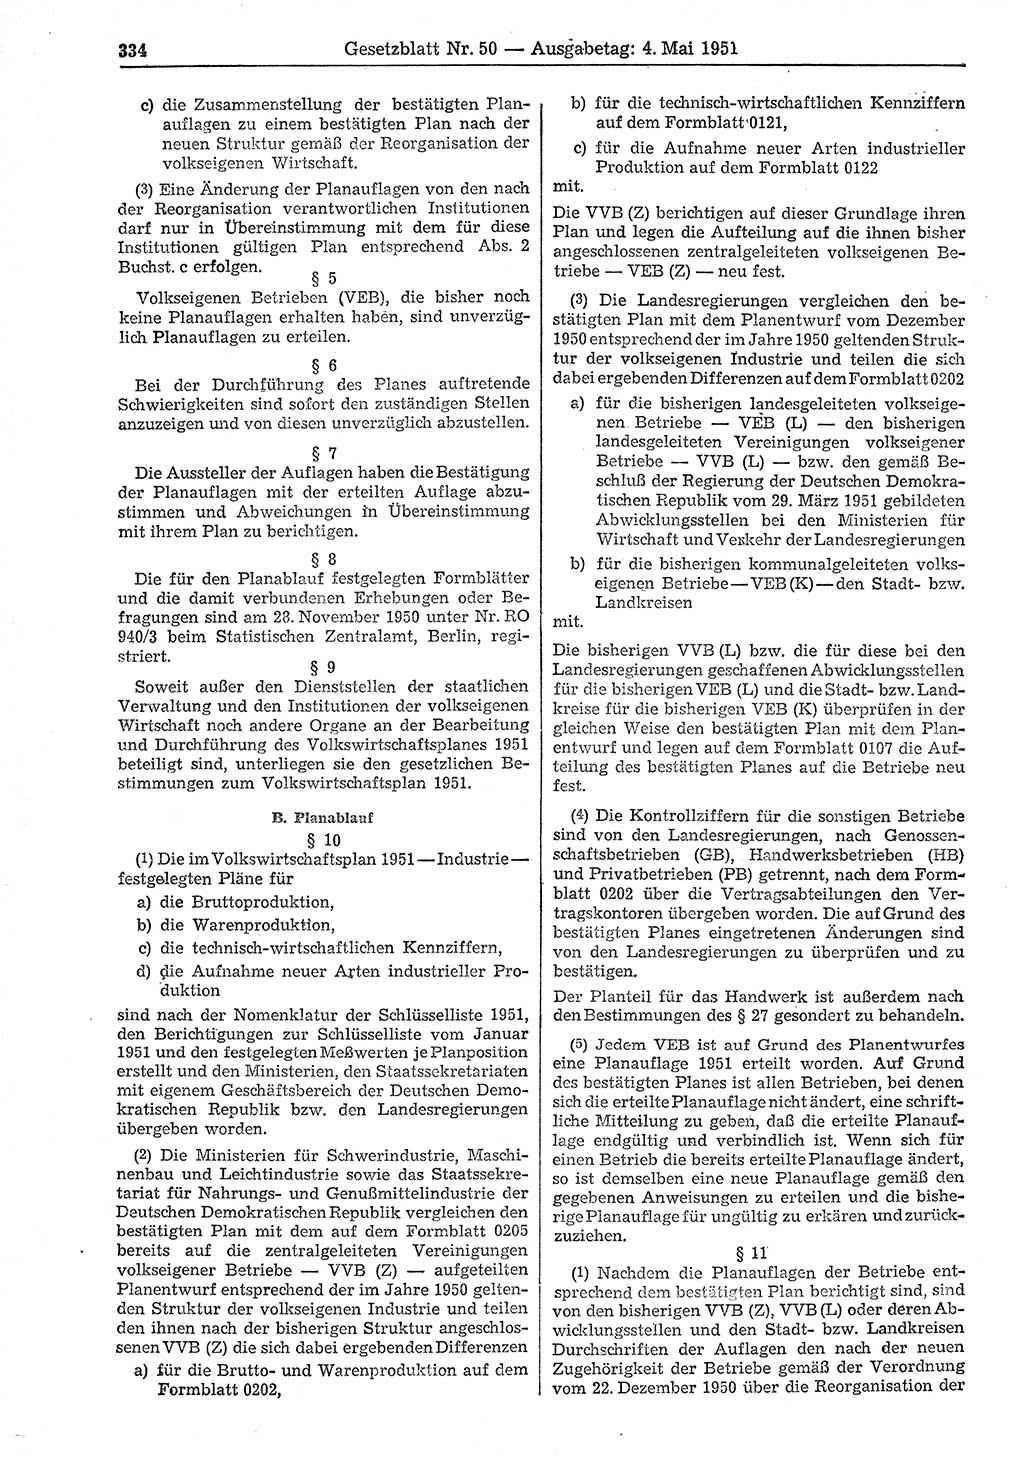 Gesetzblatt (GBl.) der Deutschen Demokratischen Republik (DDR) 1951, Seite 334 (GBl. DDR 1951, S. 334)